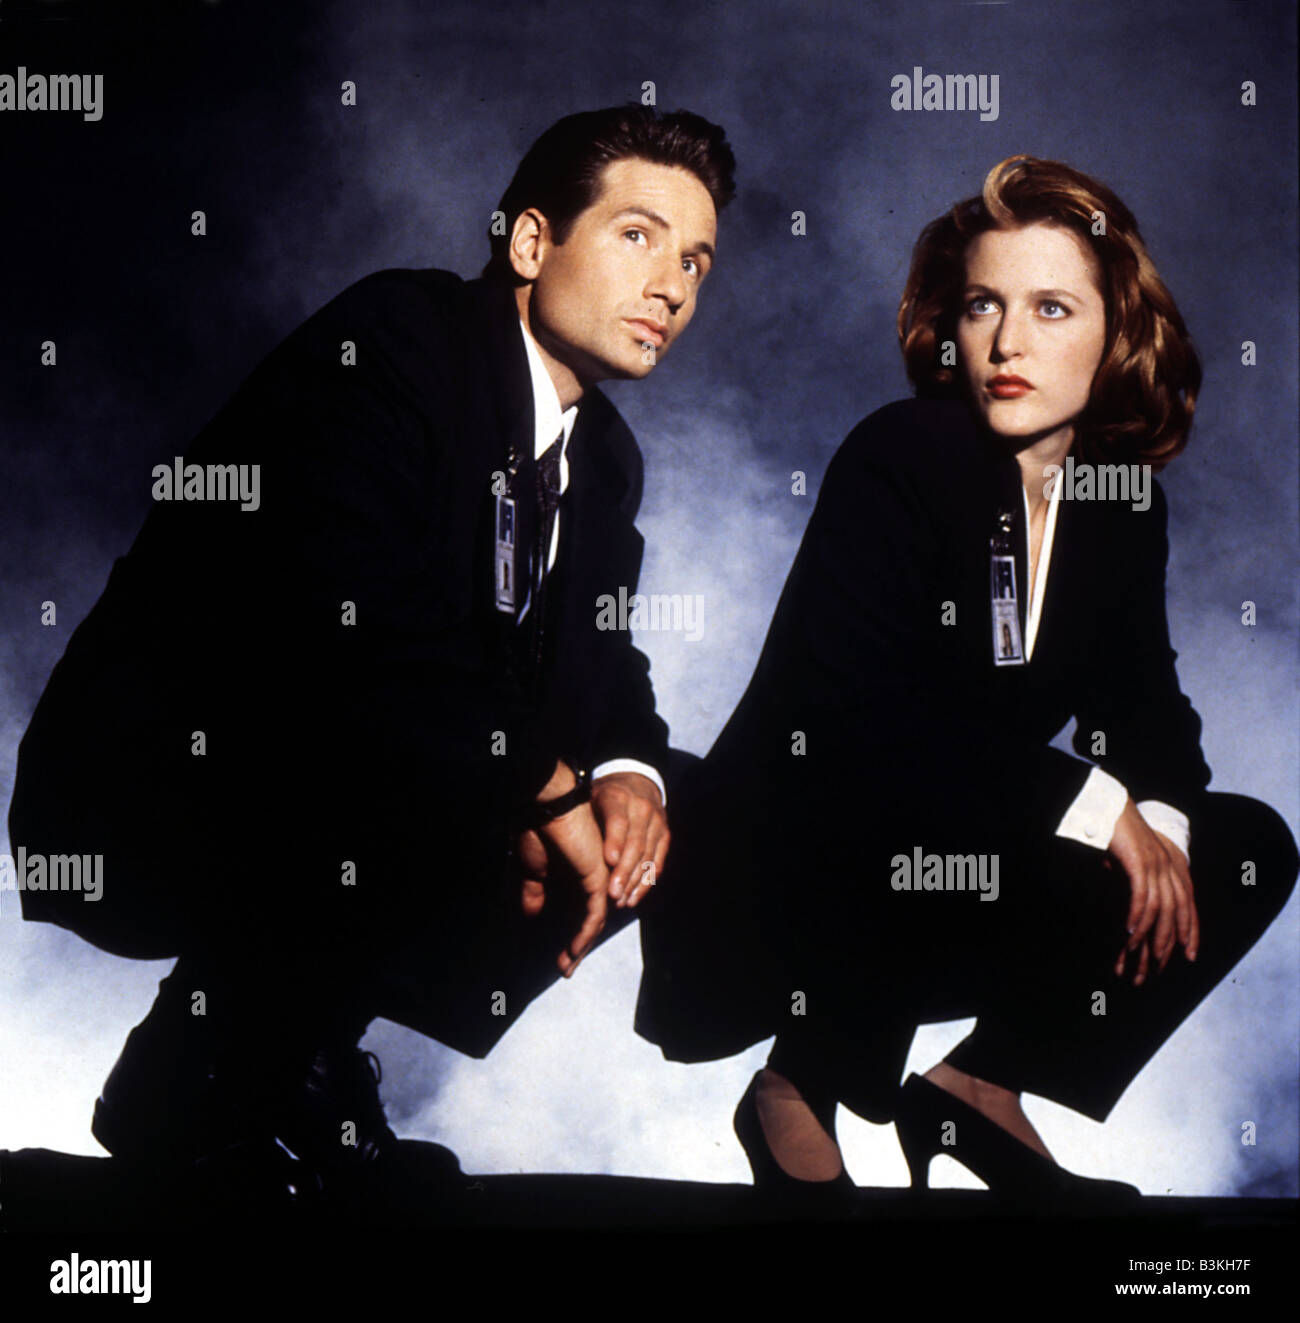 X FILES NOI TV serie 1993 a 2002 con David Duchovny e Gillian Anderson Foto Stock